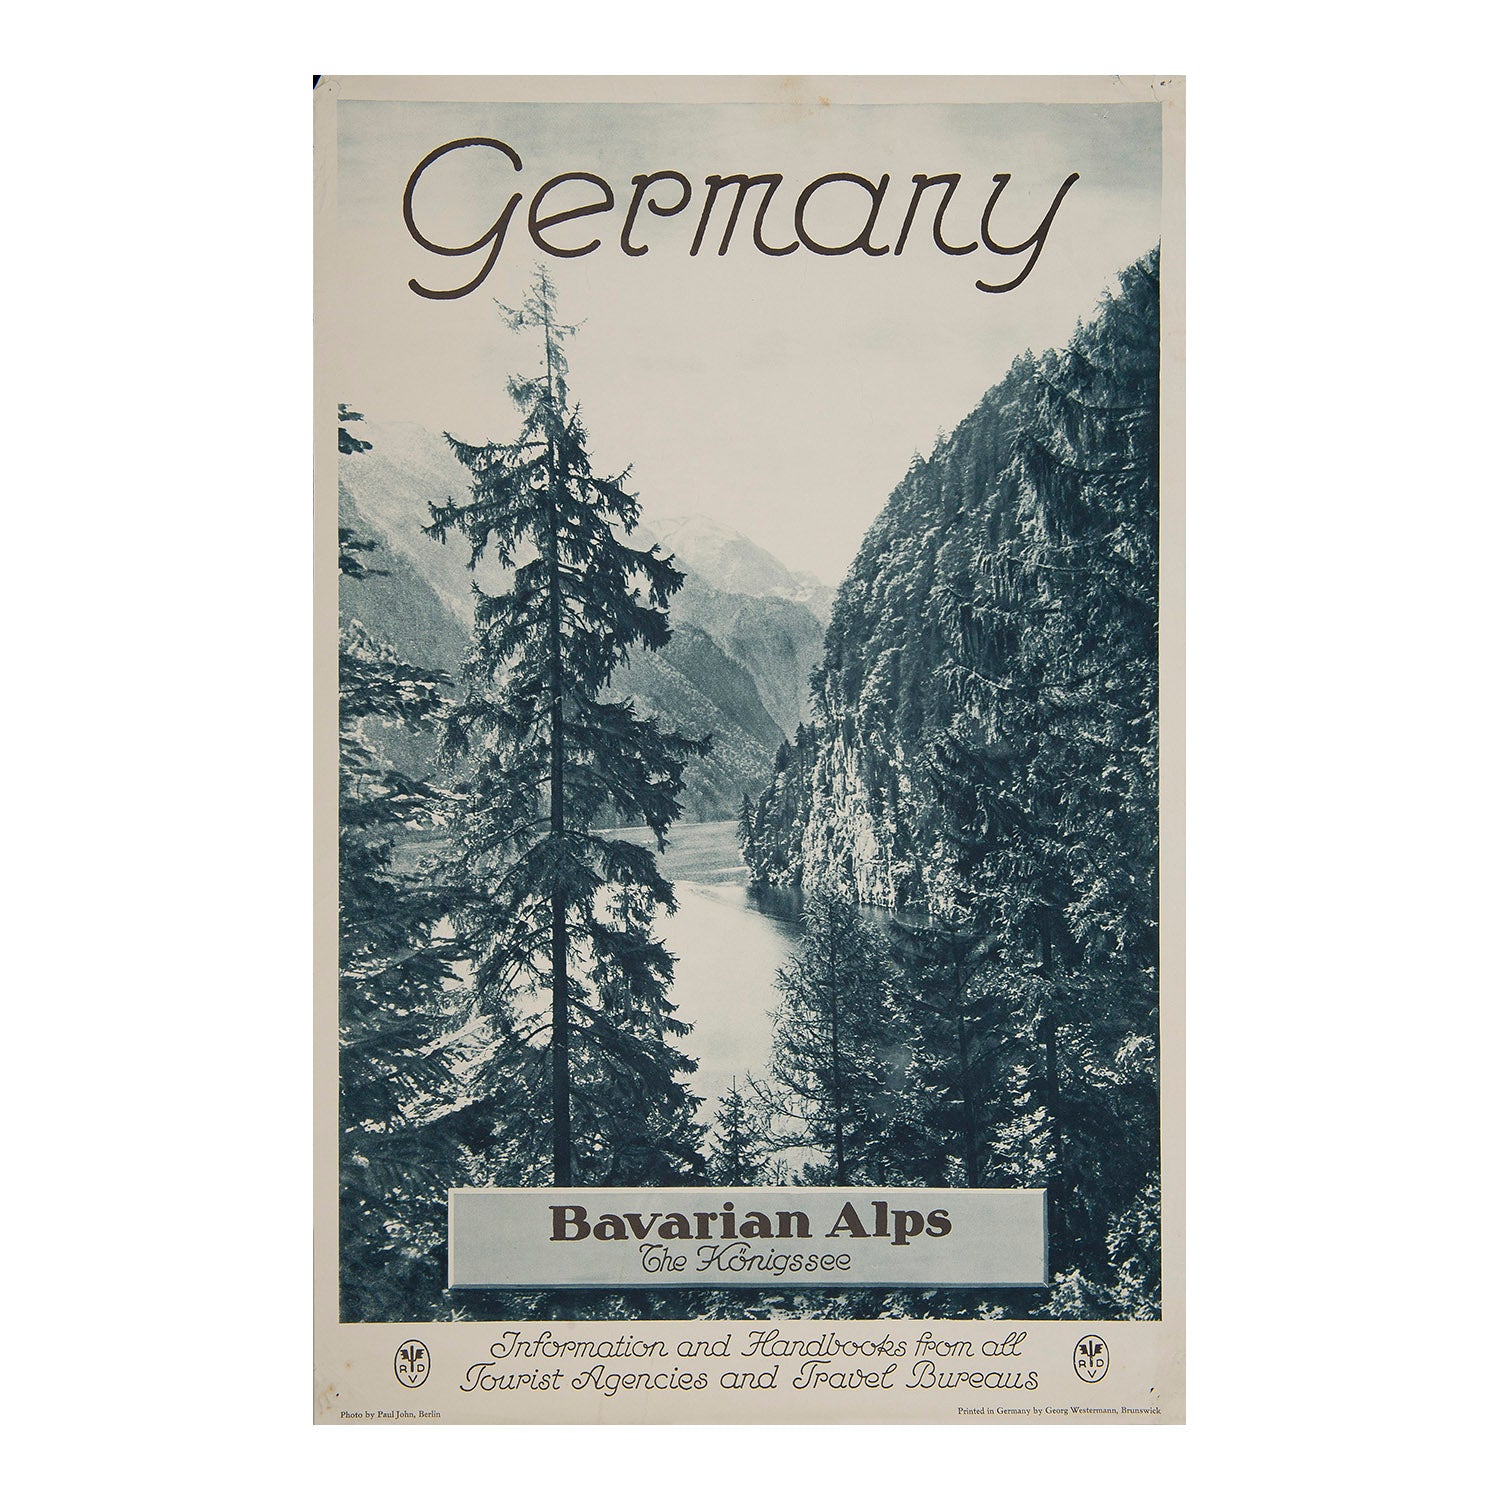 German Railway poster published by the Reichsbahnzentrale für den Deutschen Reiseverkehr (RDV) in c.1930, promoting the Königssee in the Bavarian Alps. Photographic poster of Bavarian Alps, Germany. 